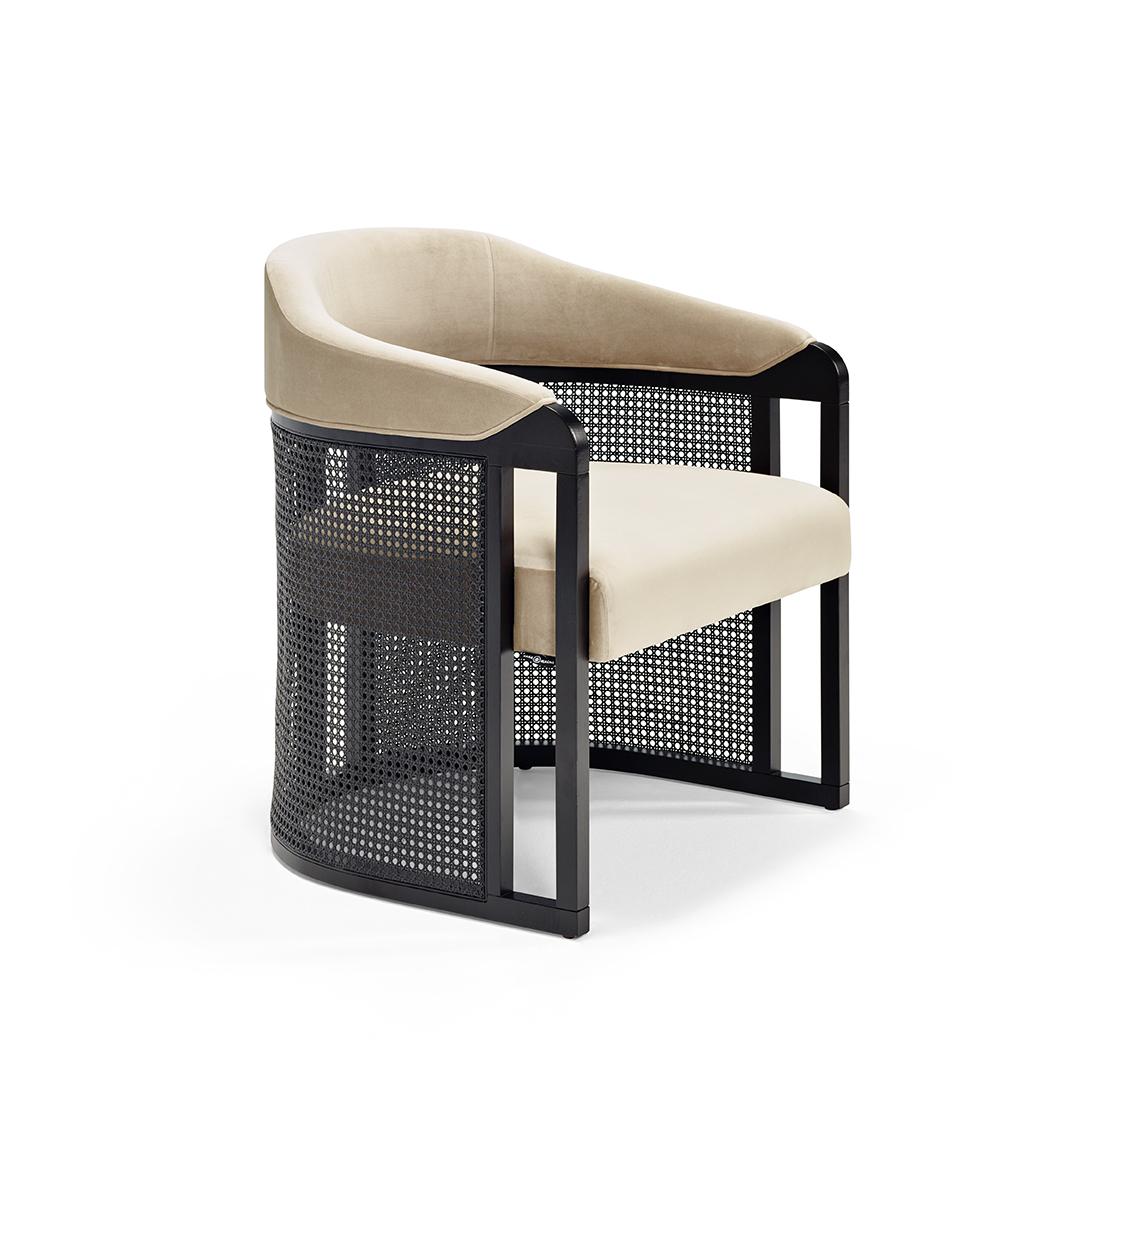 Der Sessel GRACE Vintage besteht aus einer Massivholzstruktur. Grace zeichnet sich durch seine raffinierten Details aus, die in den Farben Natur oder Wenguê erhältlich sind, sowie durch seine einzigartige und elegant geschwungene Form. Die